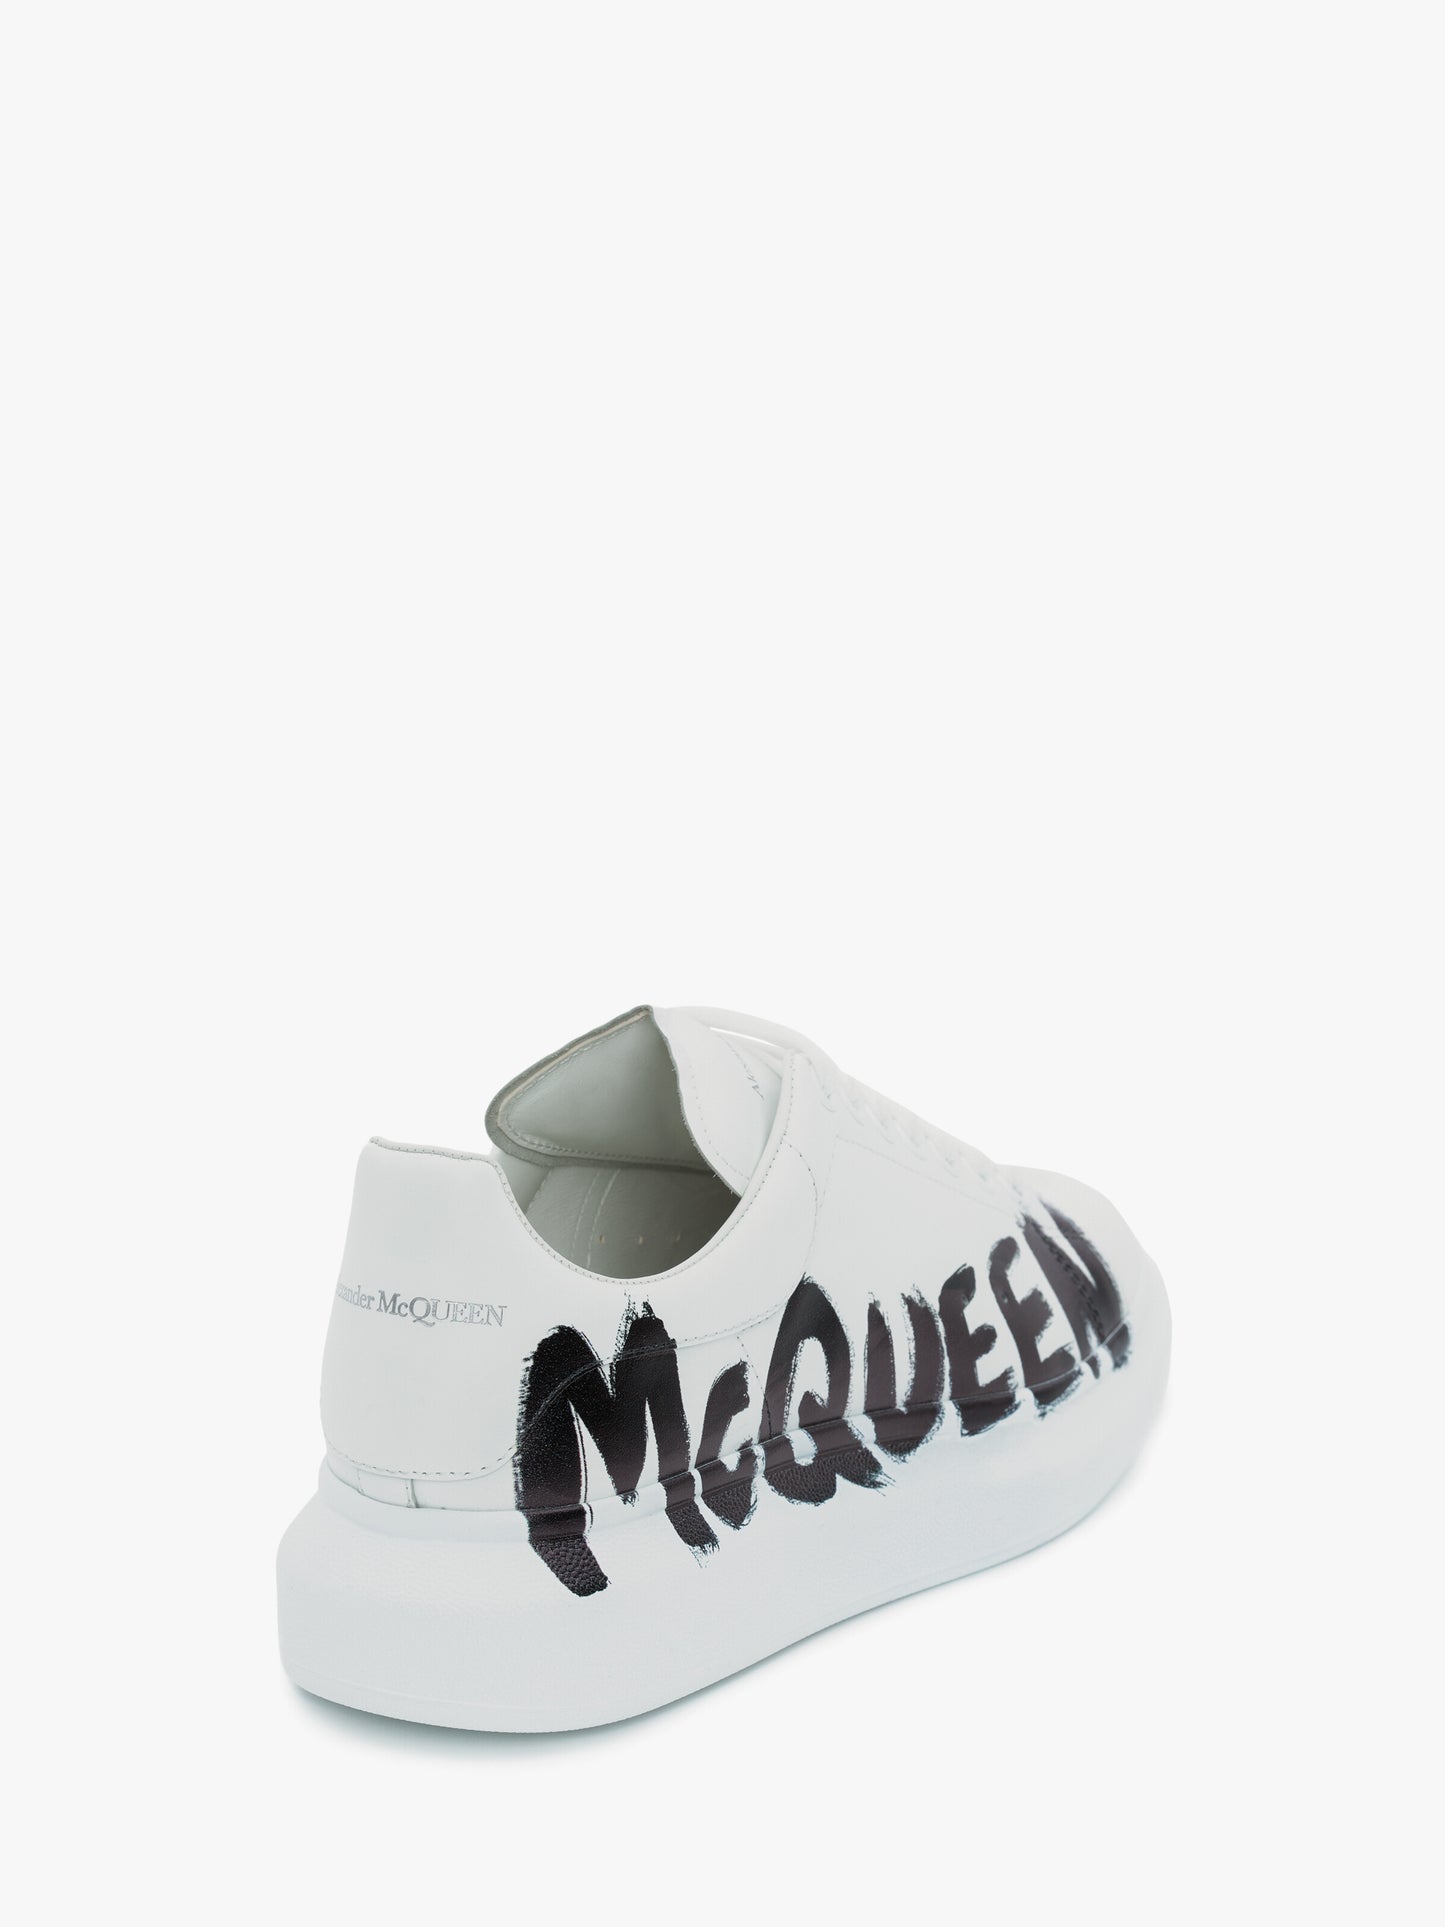 ALEXANDER McQUEEN - Sneaker Oversize McQueen Graffiti in Bianco/nero - IperShopNY